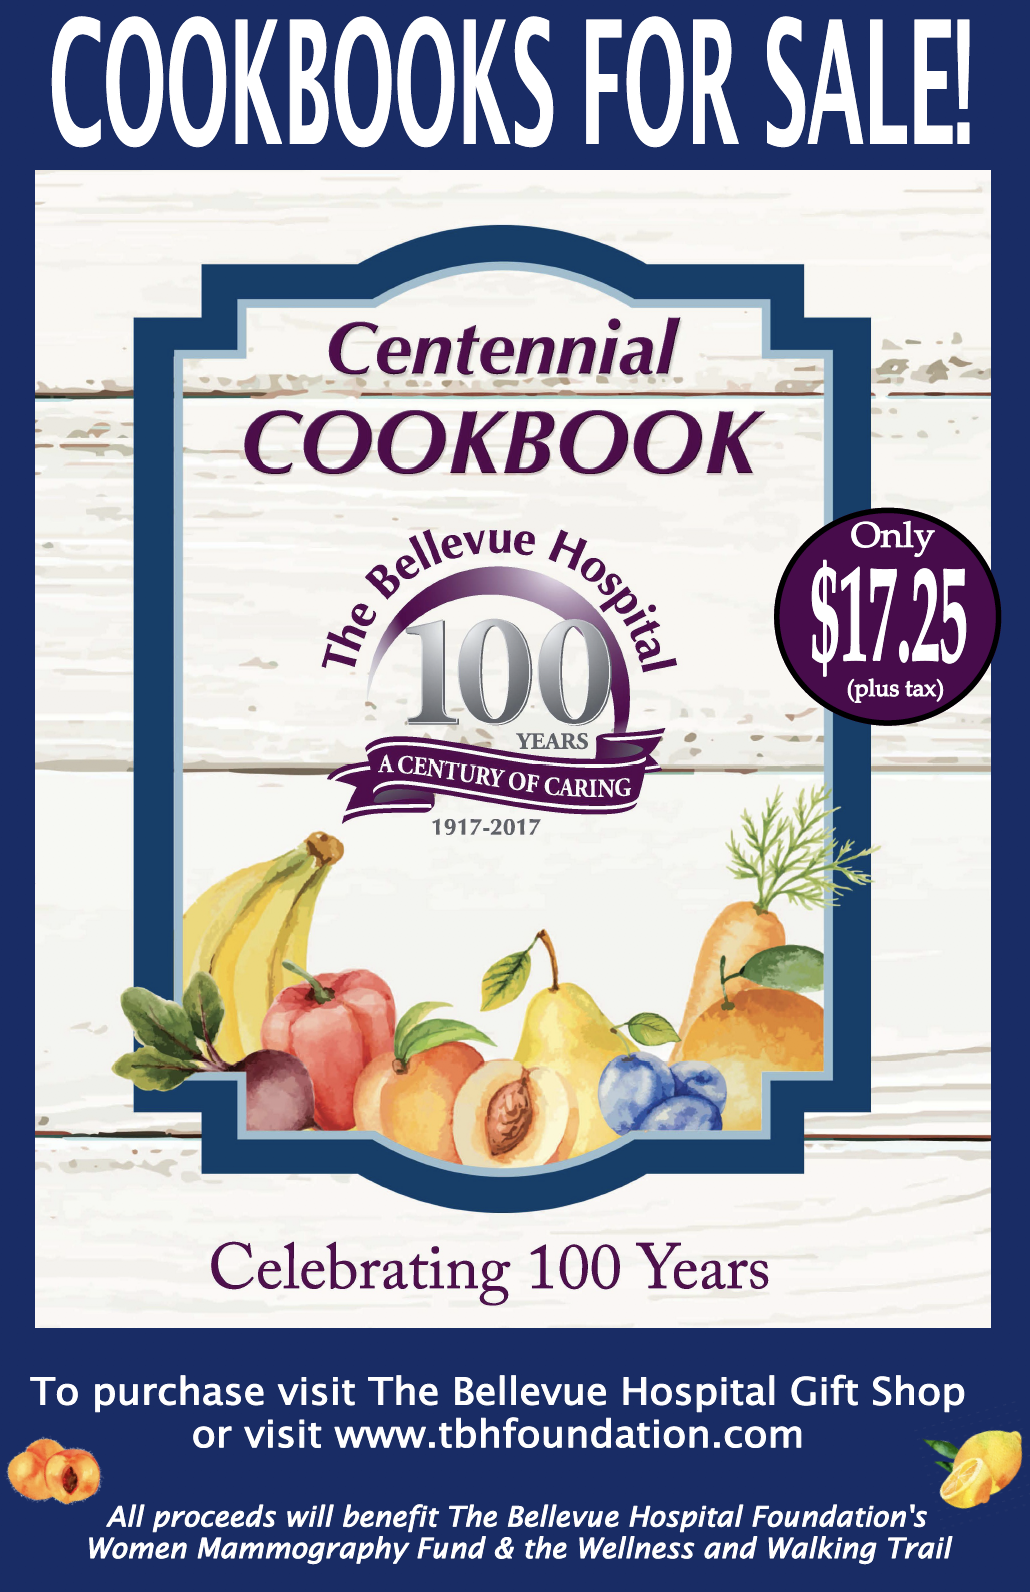 Centennial Cookbook For Sale